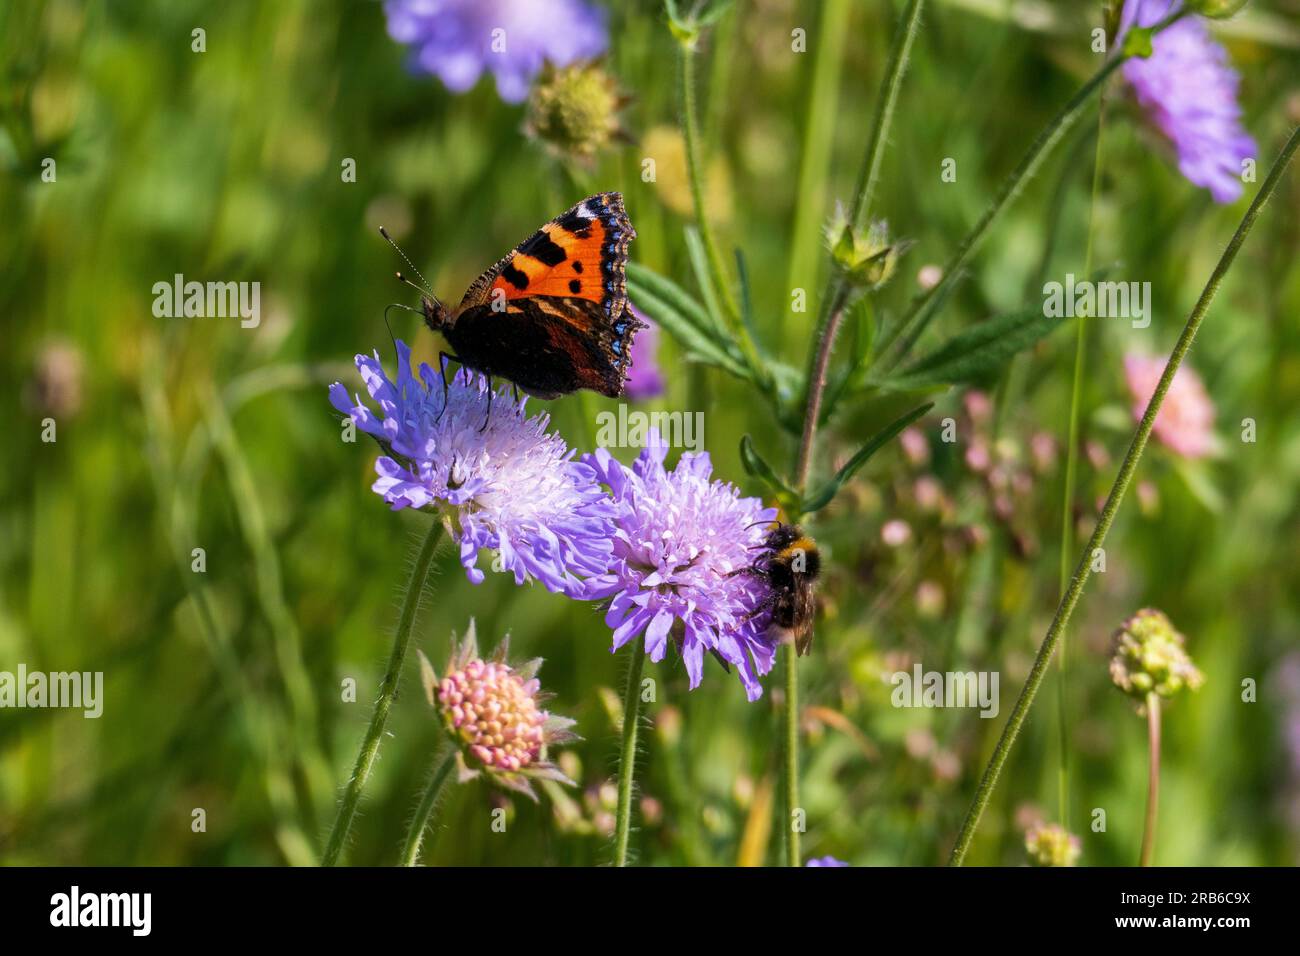 Kleiner Fuchs, Aglais urticae, Schmetterling auf einer lila Acker Witwenblume Stock Photo